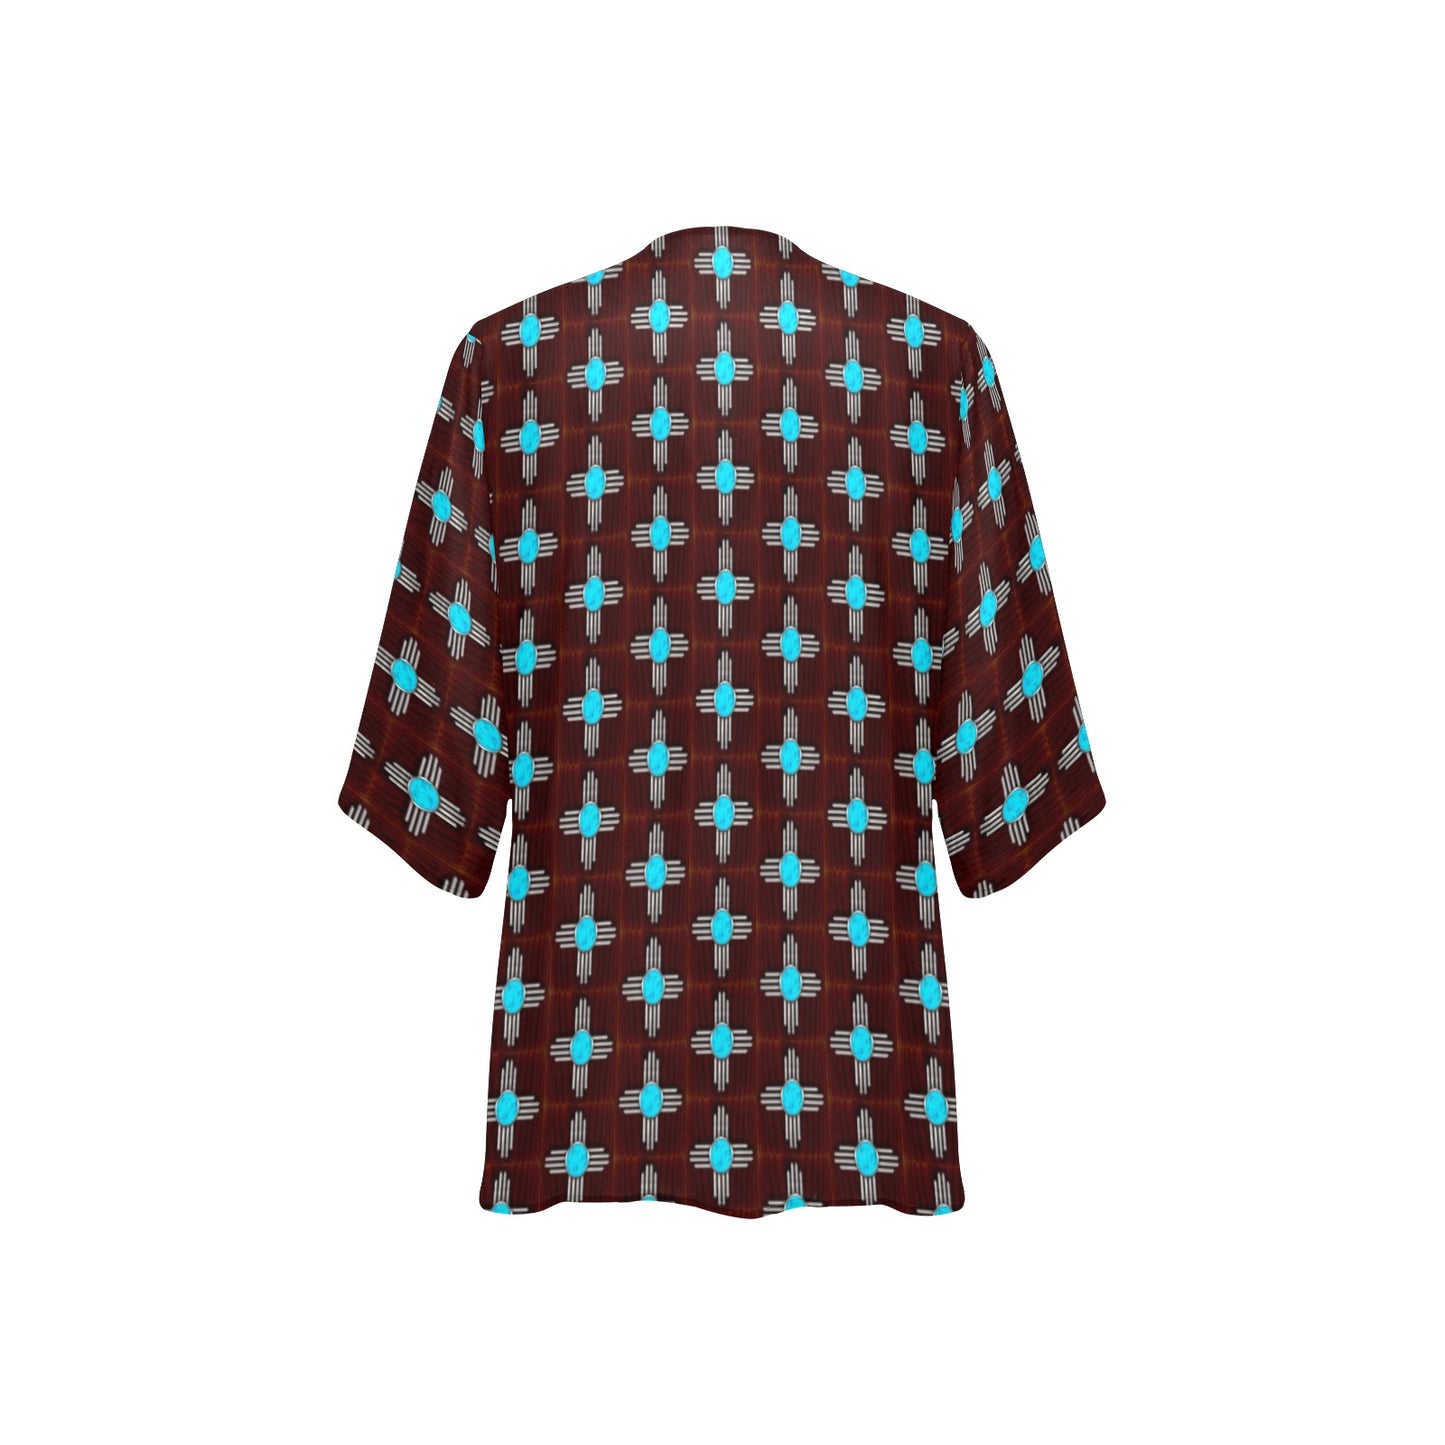 Turquoise Zia Kimono Chiffon Cover Up